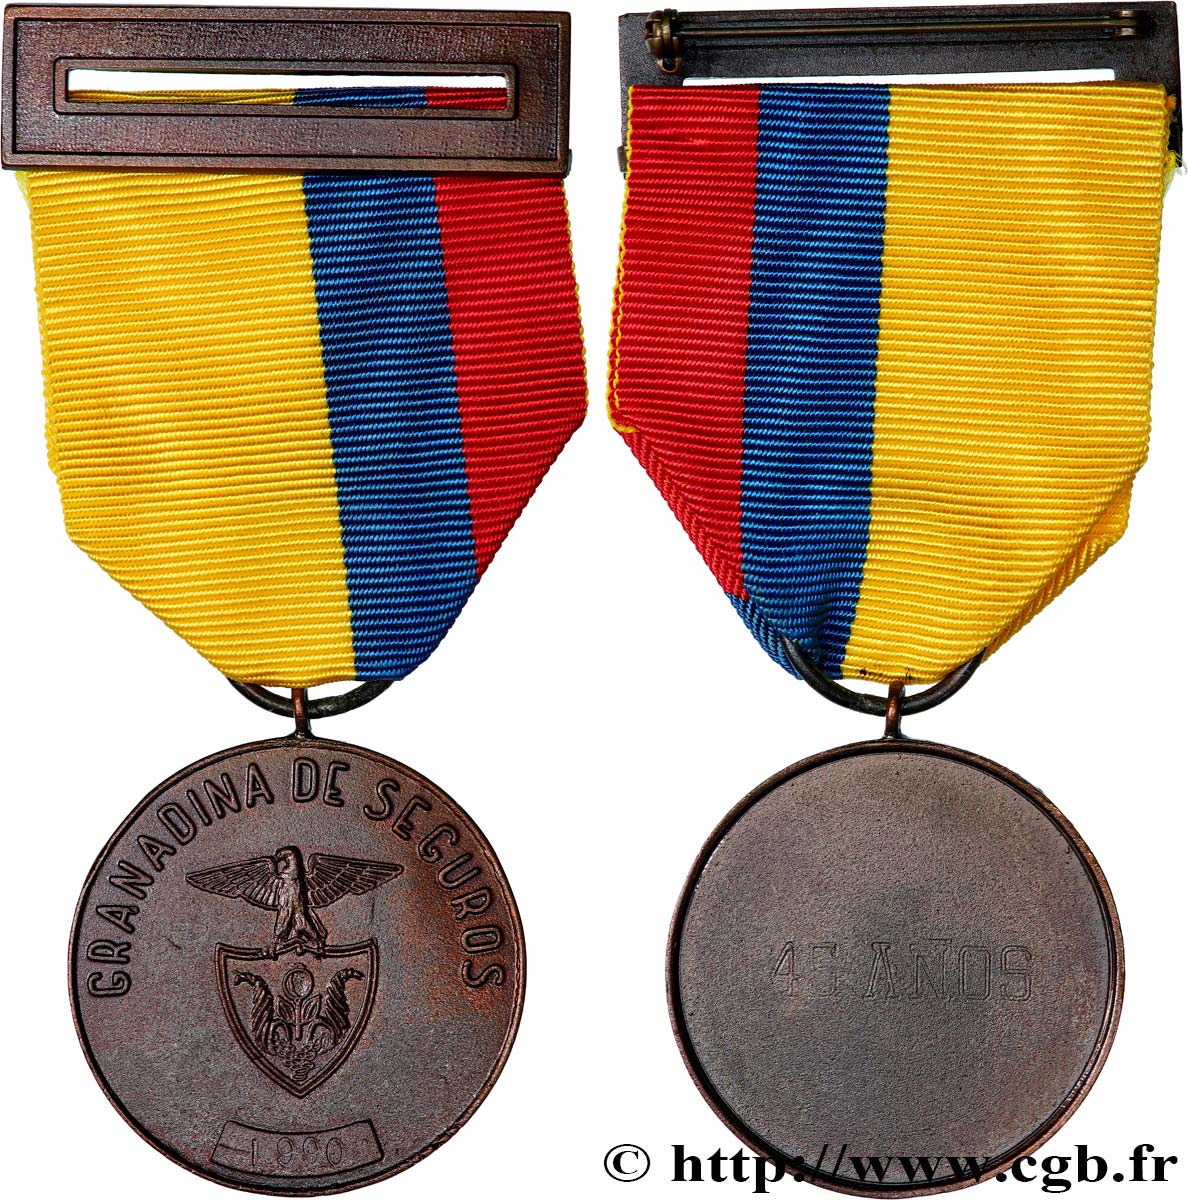 LES ASSURANCES Médaille, Granadina de seguros EBC